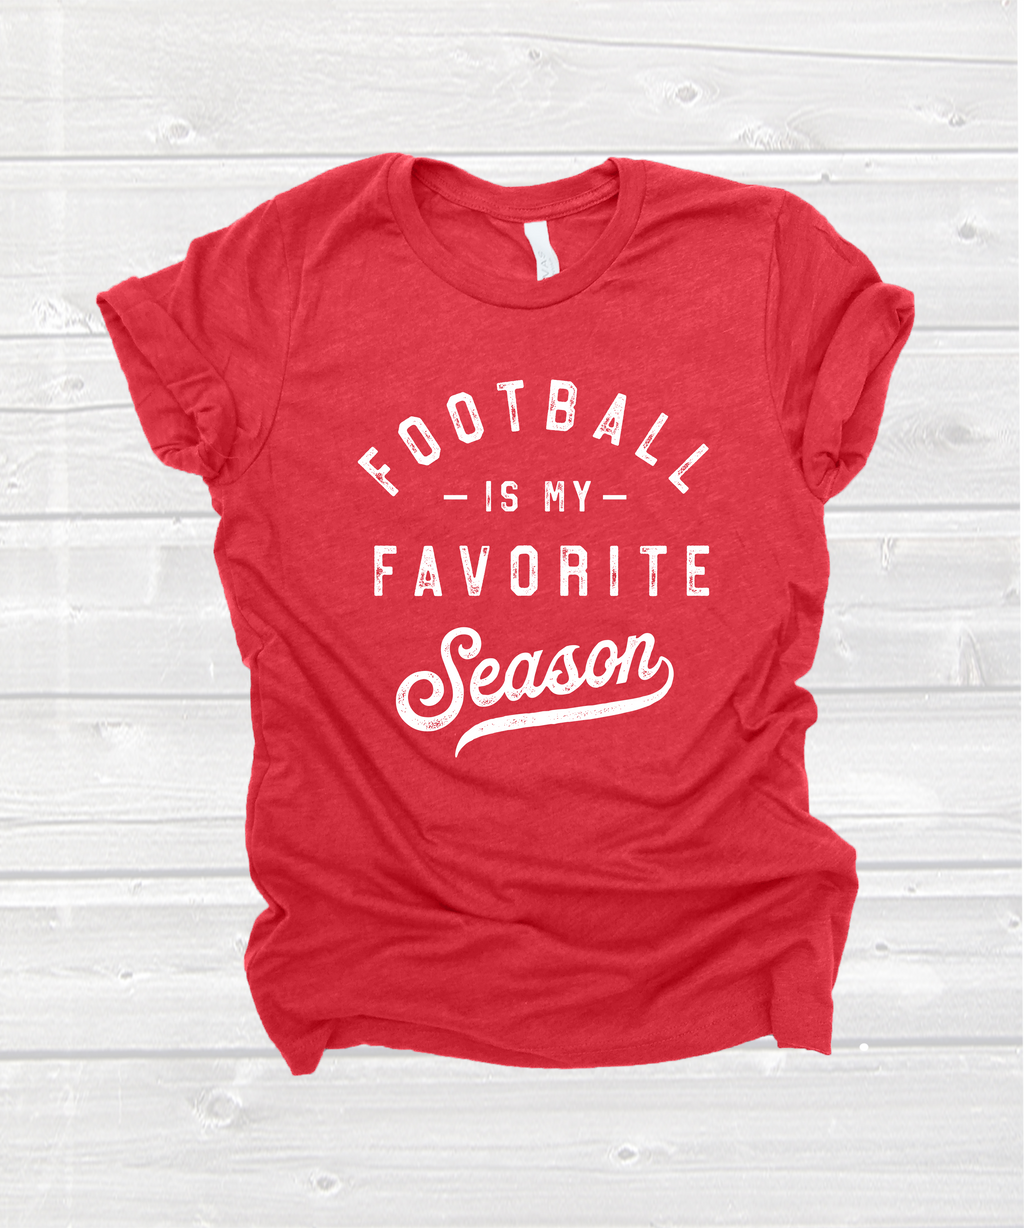 "football is my favorite season" tee in heather red